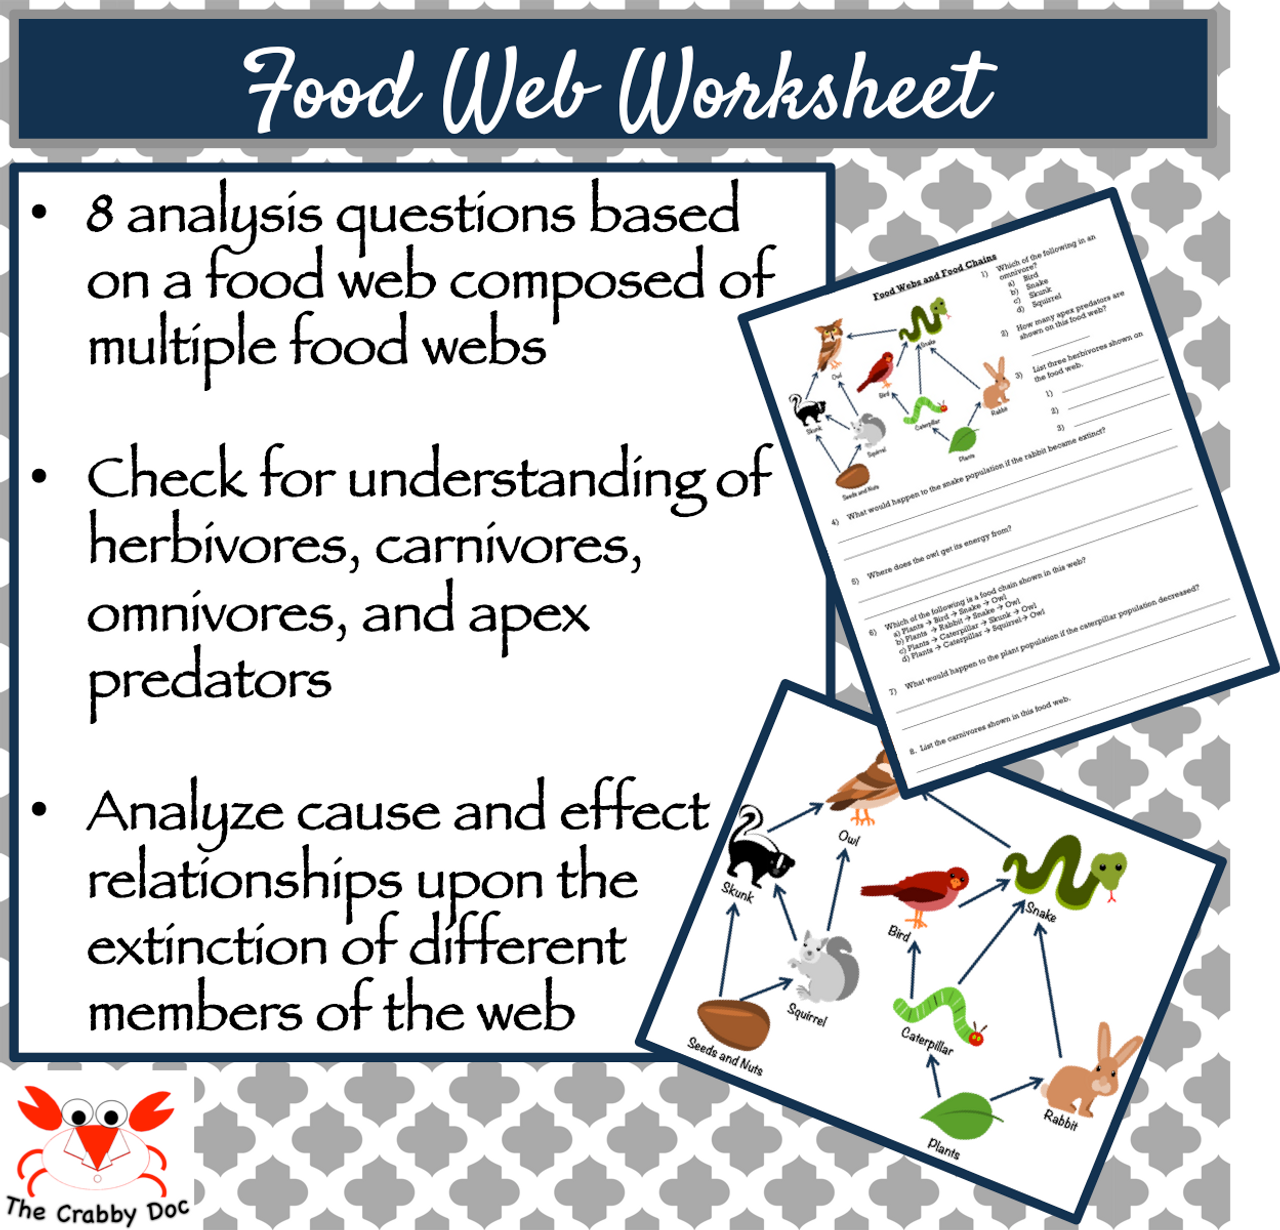 Food Webs Worksheet